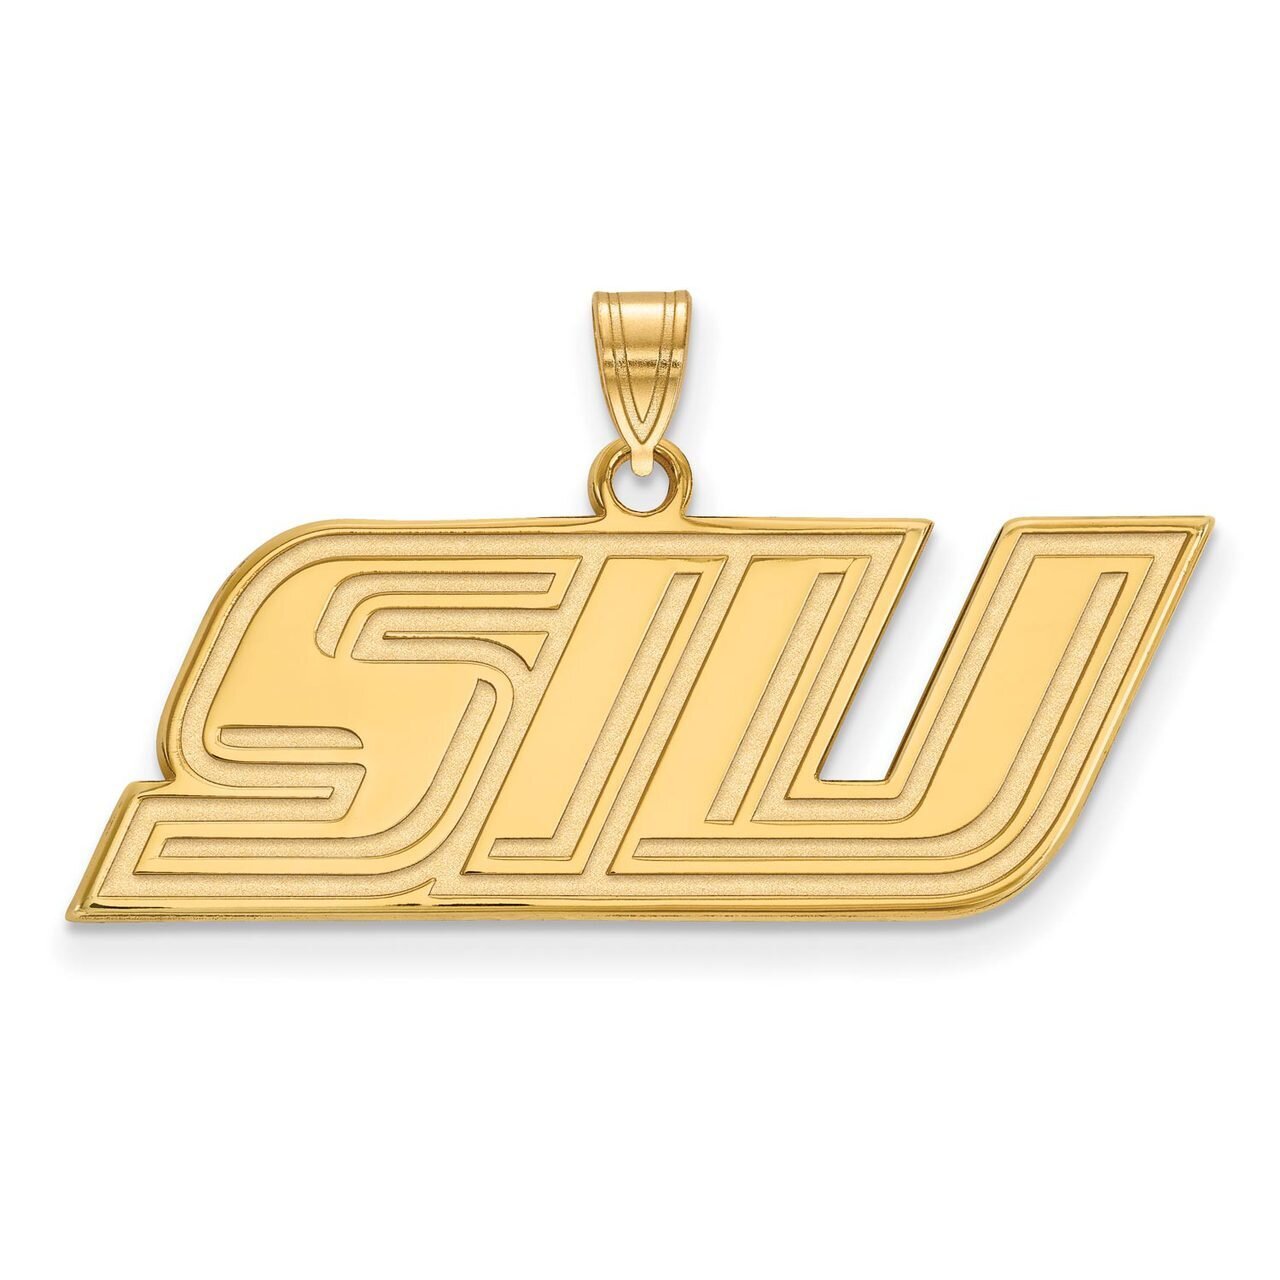 Southern Illinois University Small Pendant 14k Yellow Gold 4Y002SIU